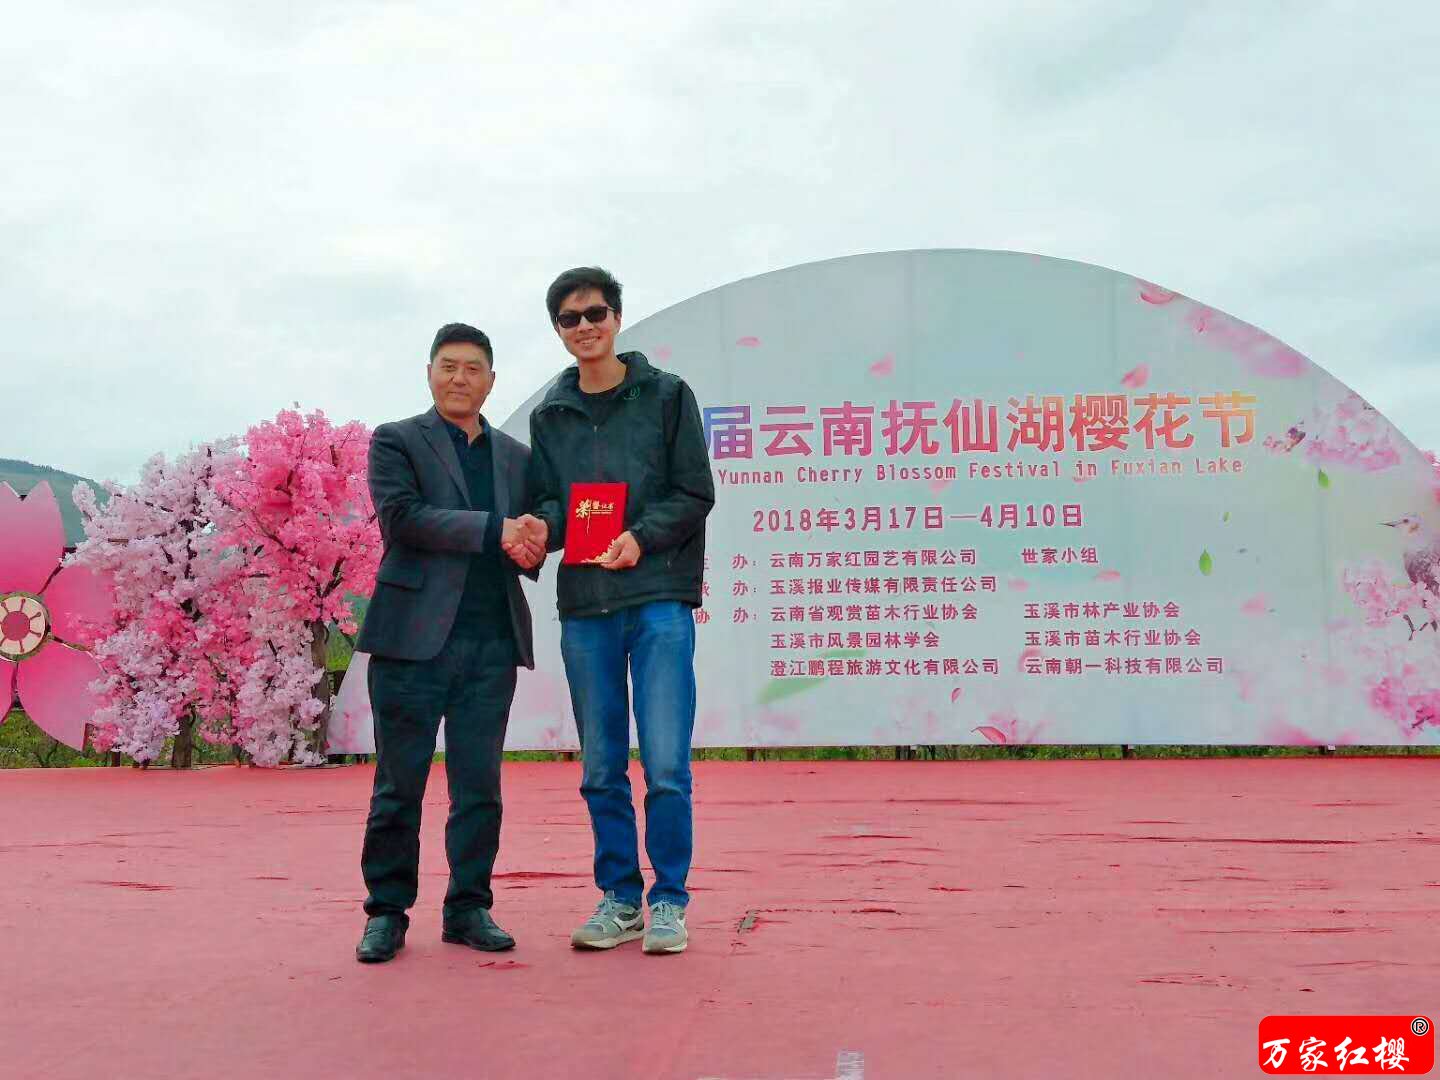 第二届云南抚仙湖樱花节”摄影大赛“圆满结束